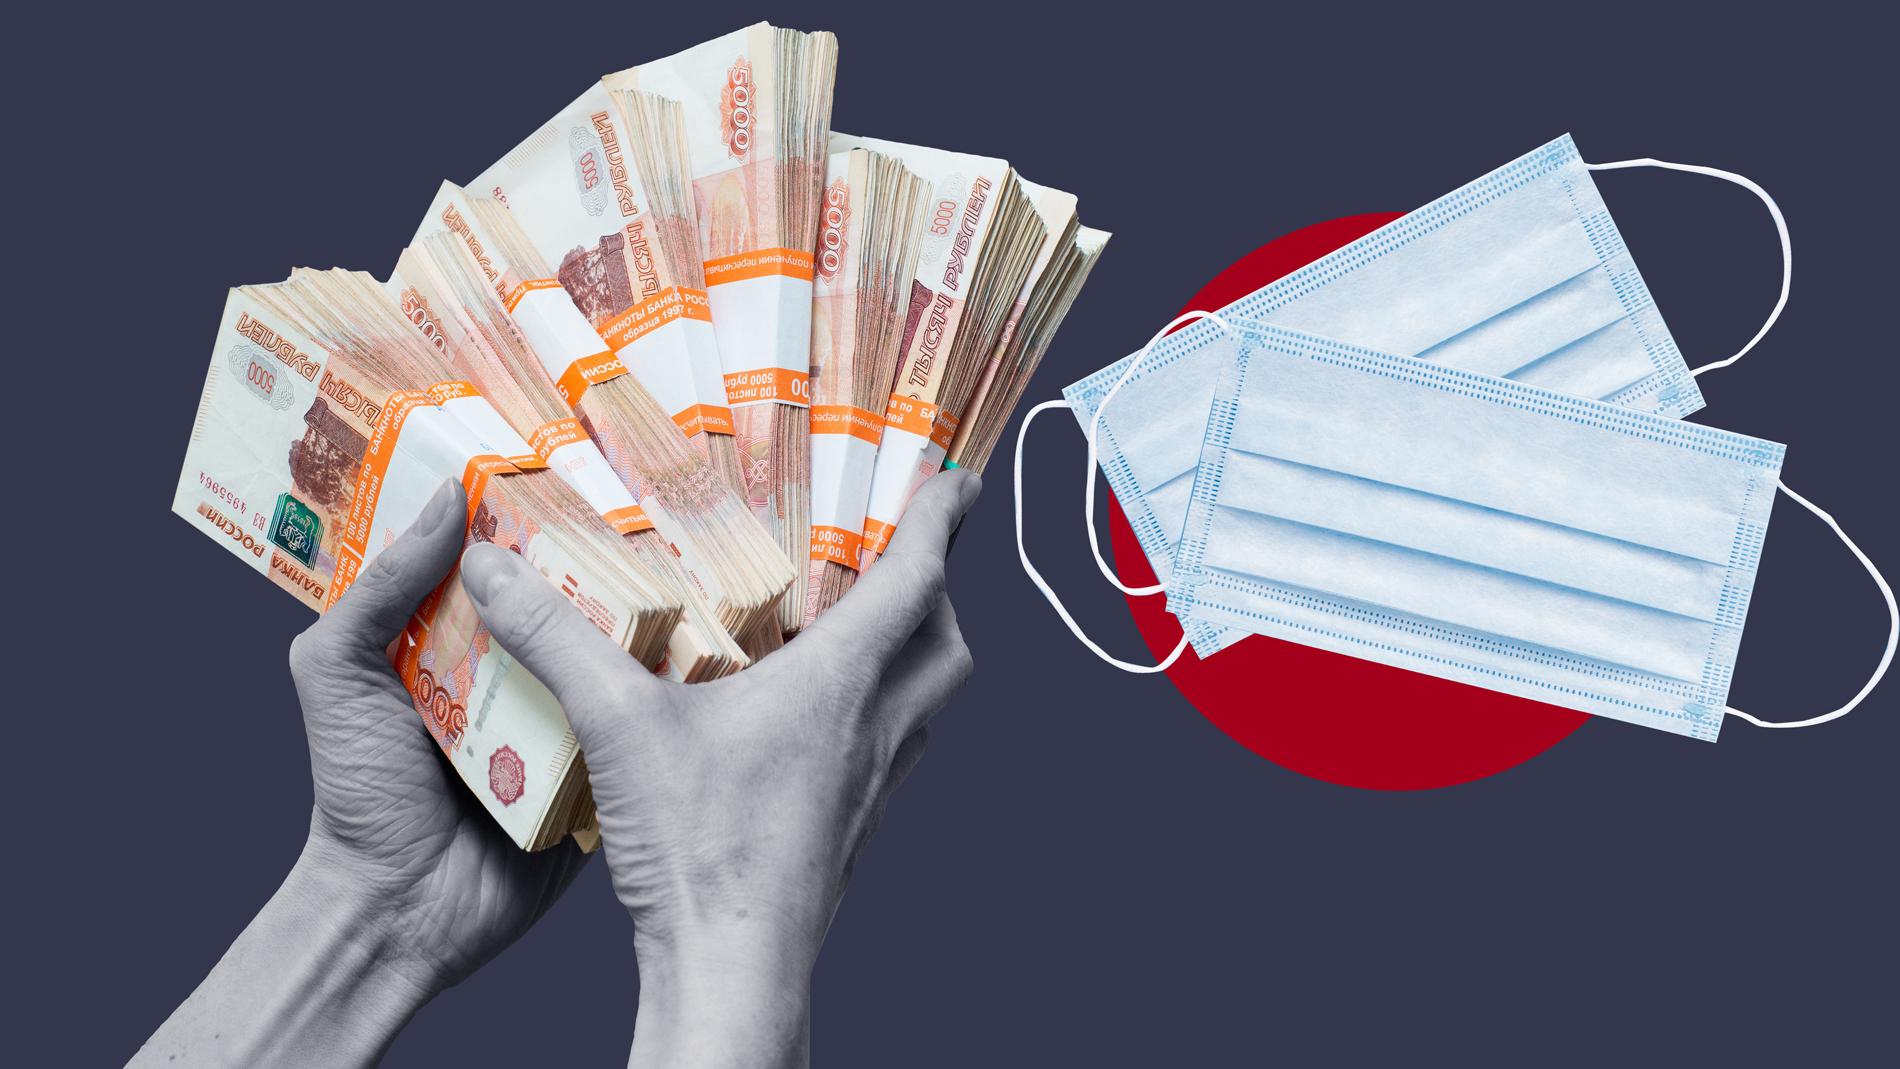 700 рублей за защитную маску: как чиновники тратят деньги на госзакупках по CoViD-19